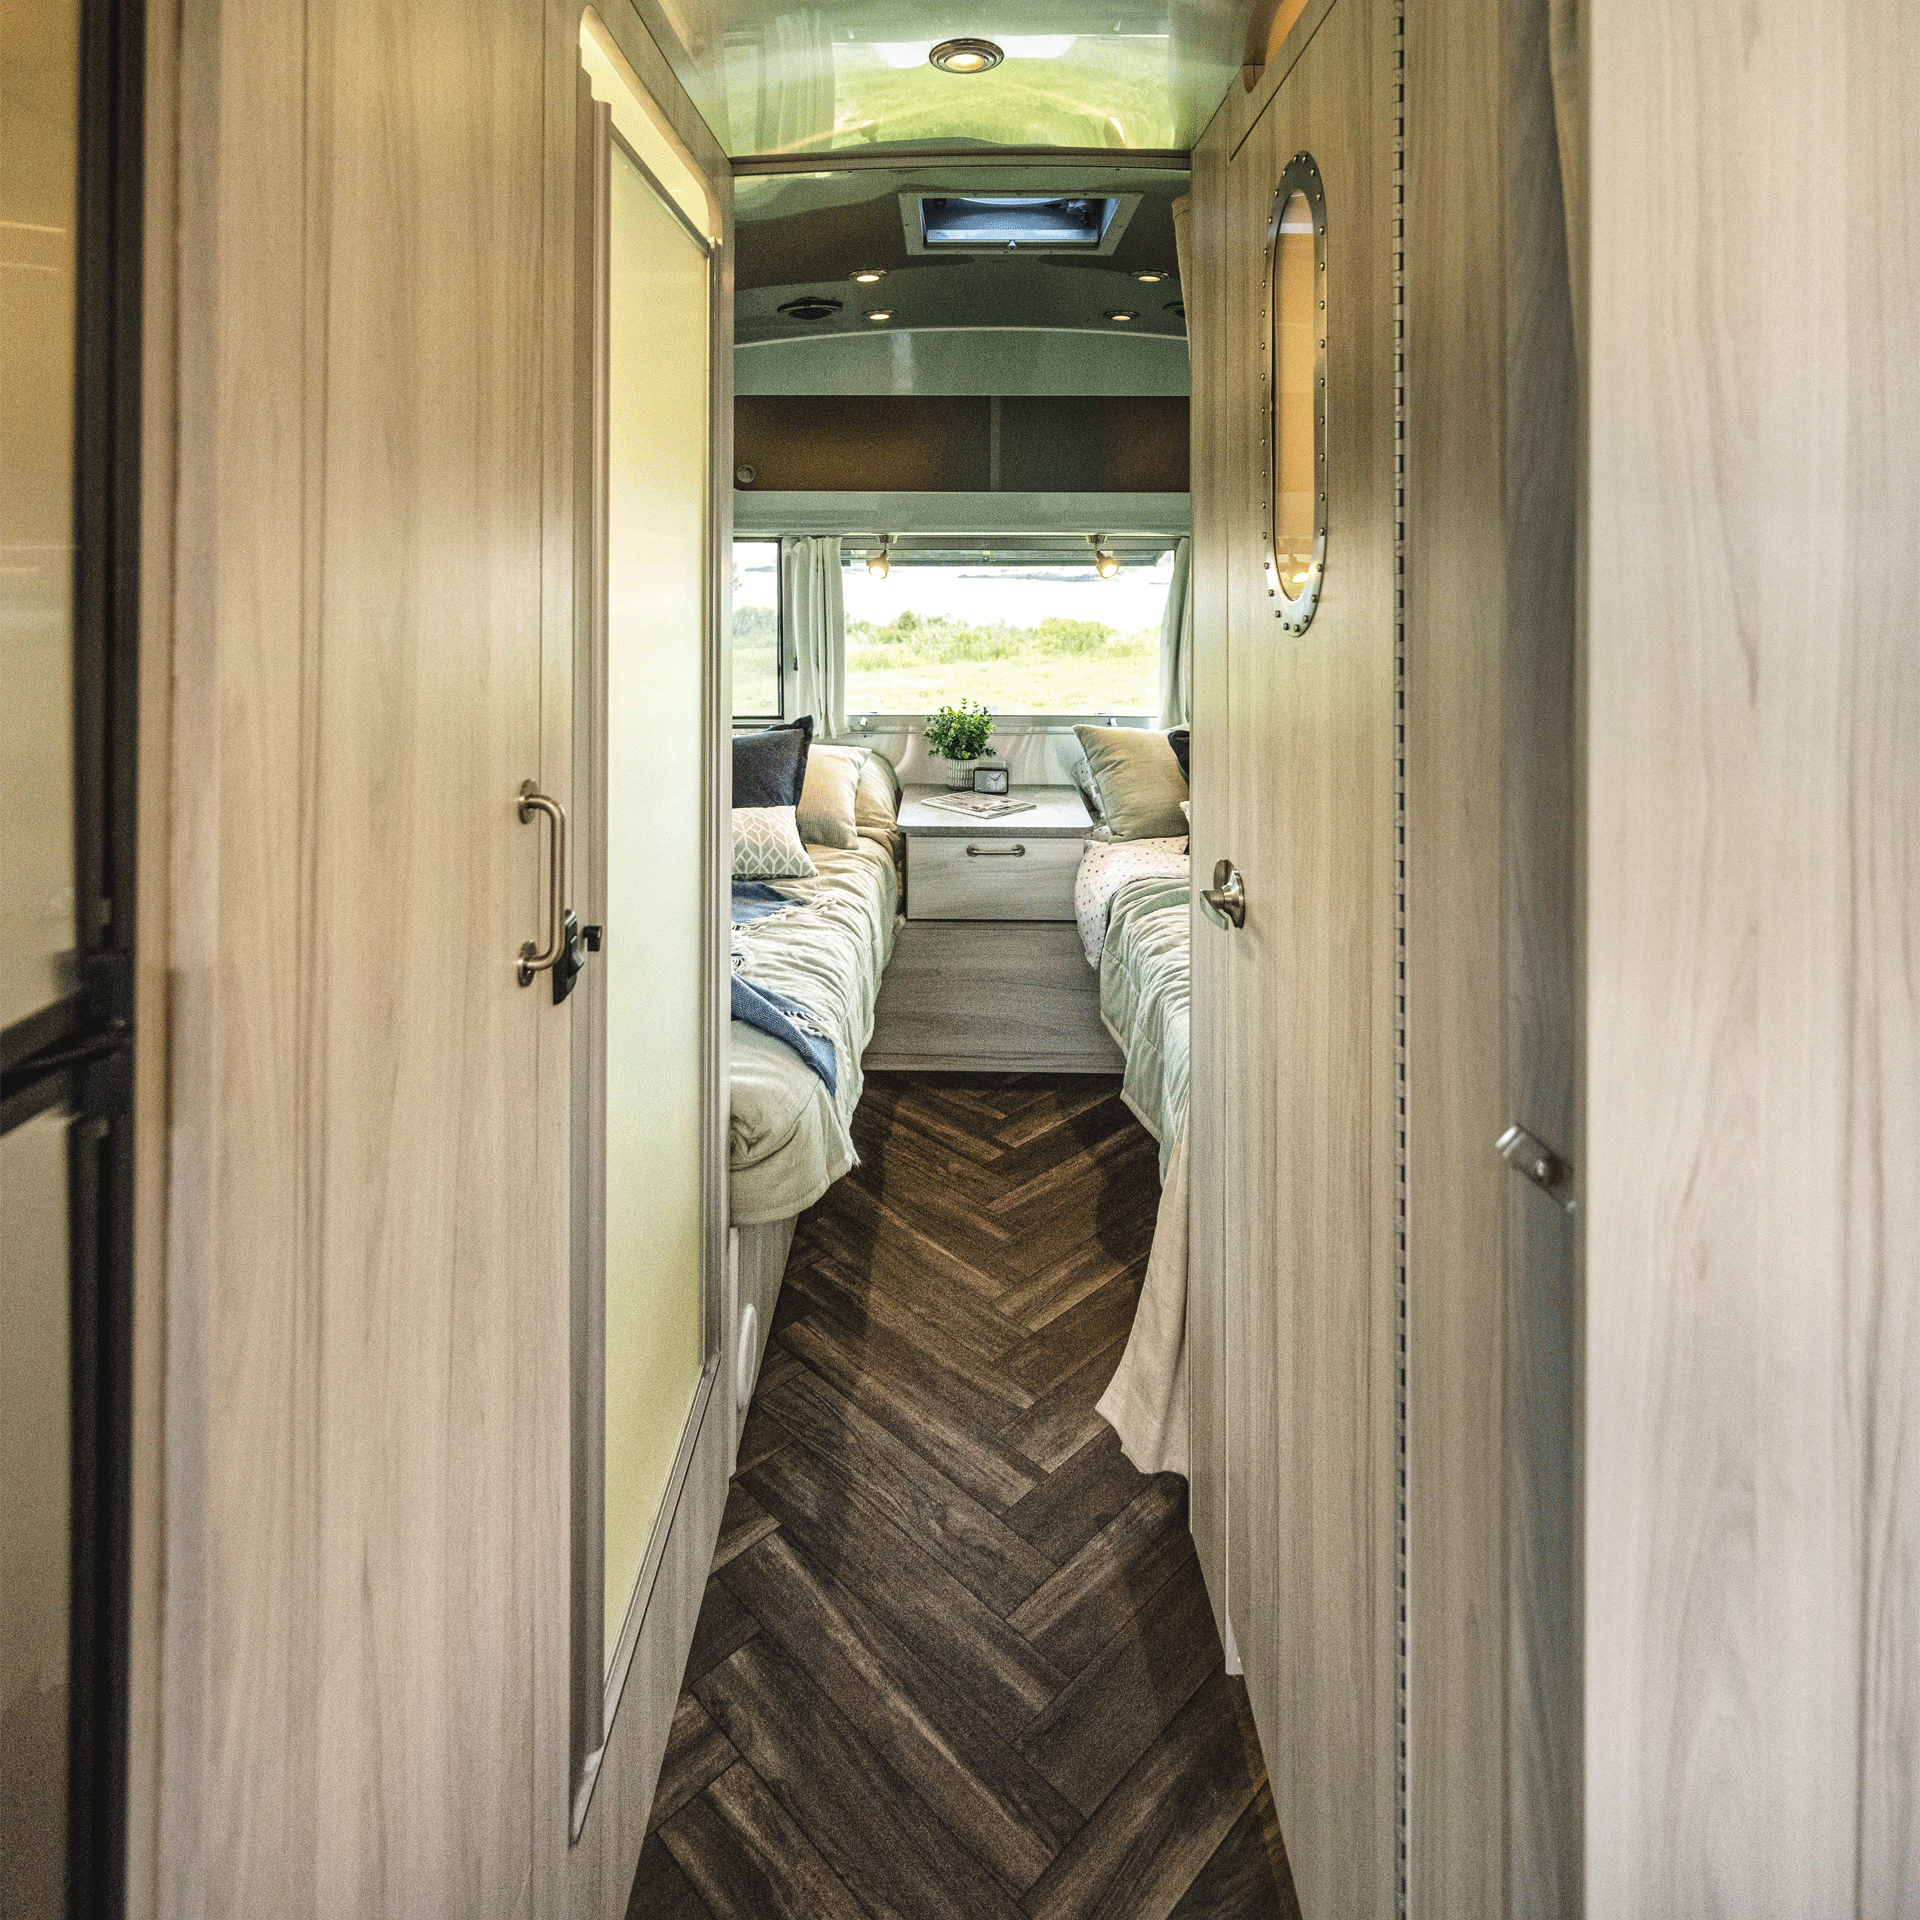 Airstream国际旅行拖车层压板用于整个露营车。